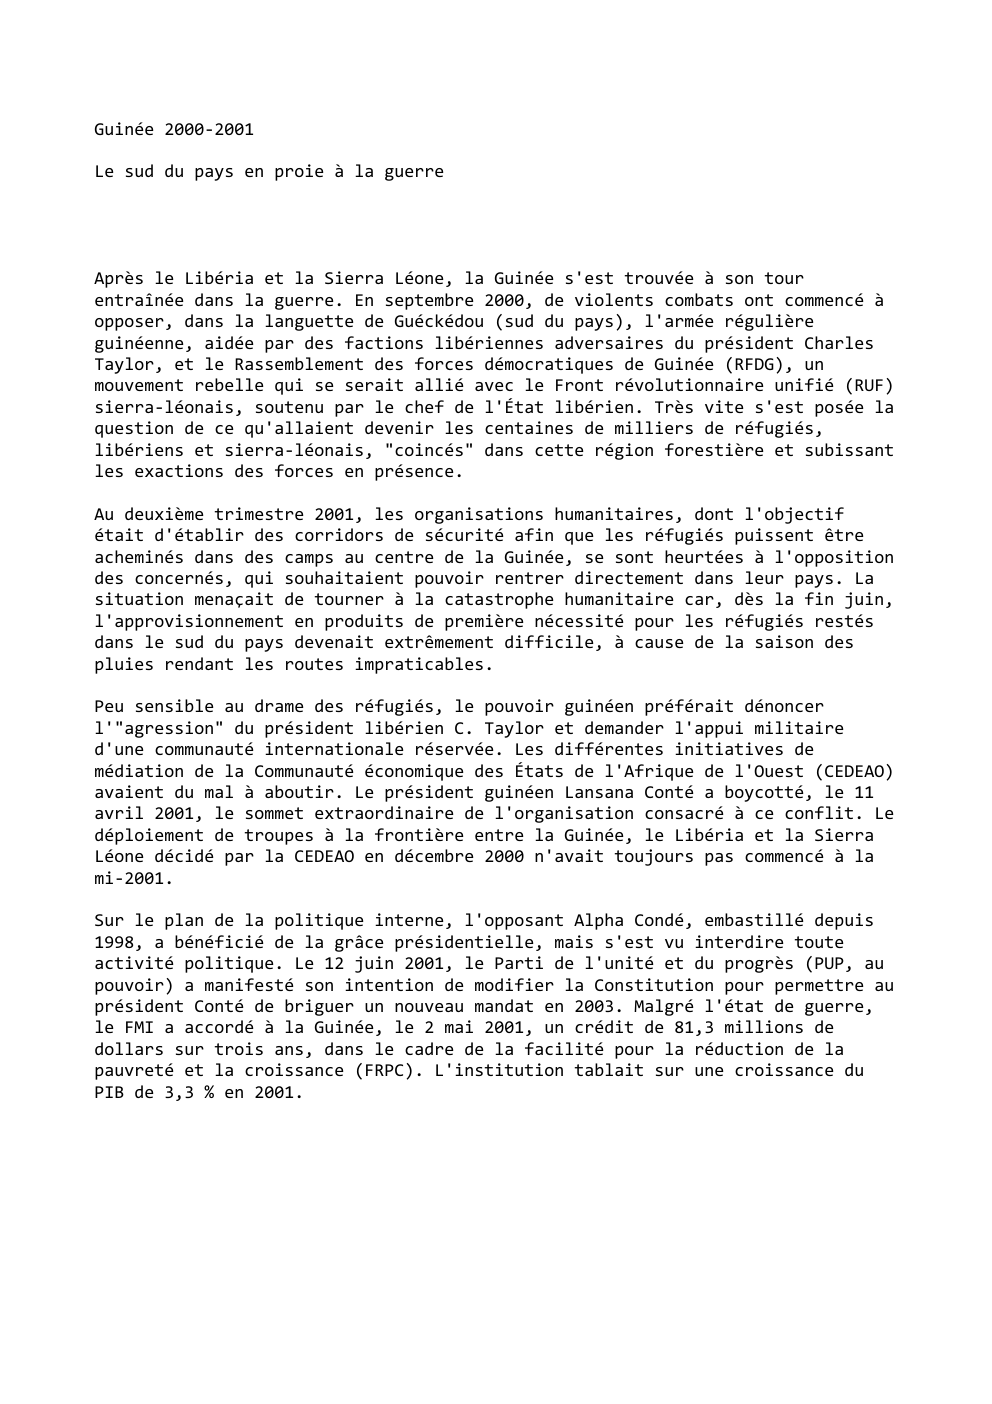 Prévisualisation du document Guinée 2000-2001
Le sud du pays en proie à la guerre

Après le Libéria et la Sierra Léone, la Guinée...